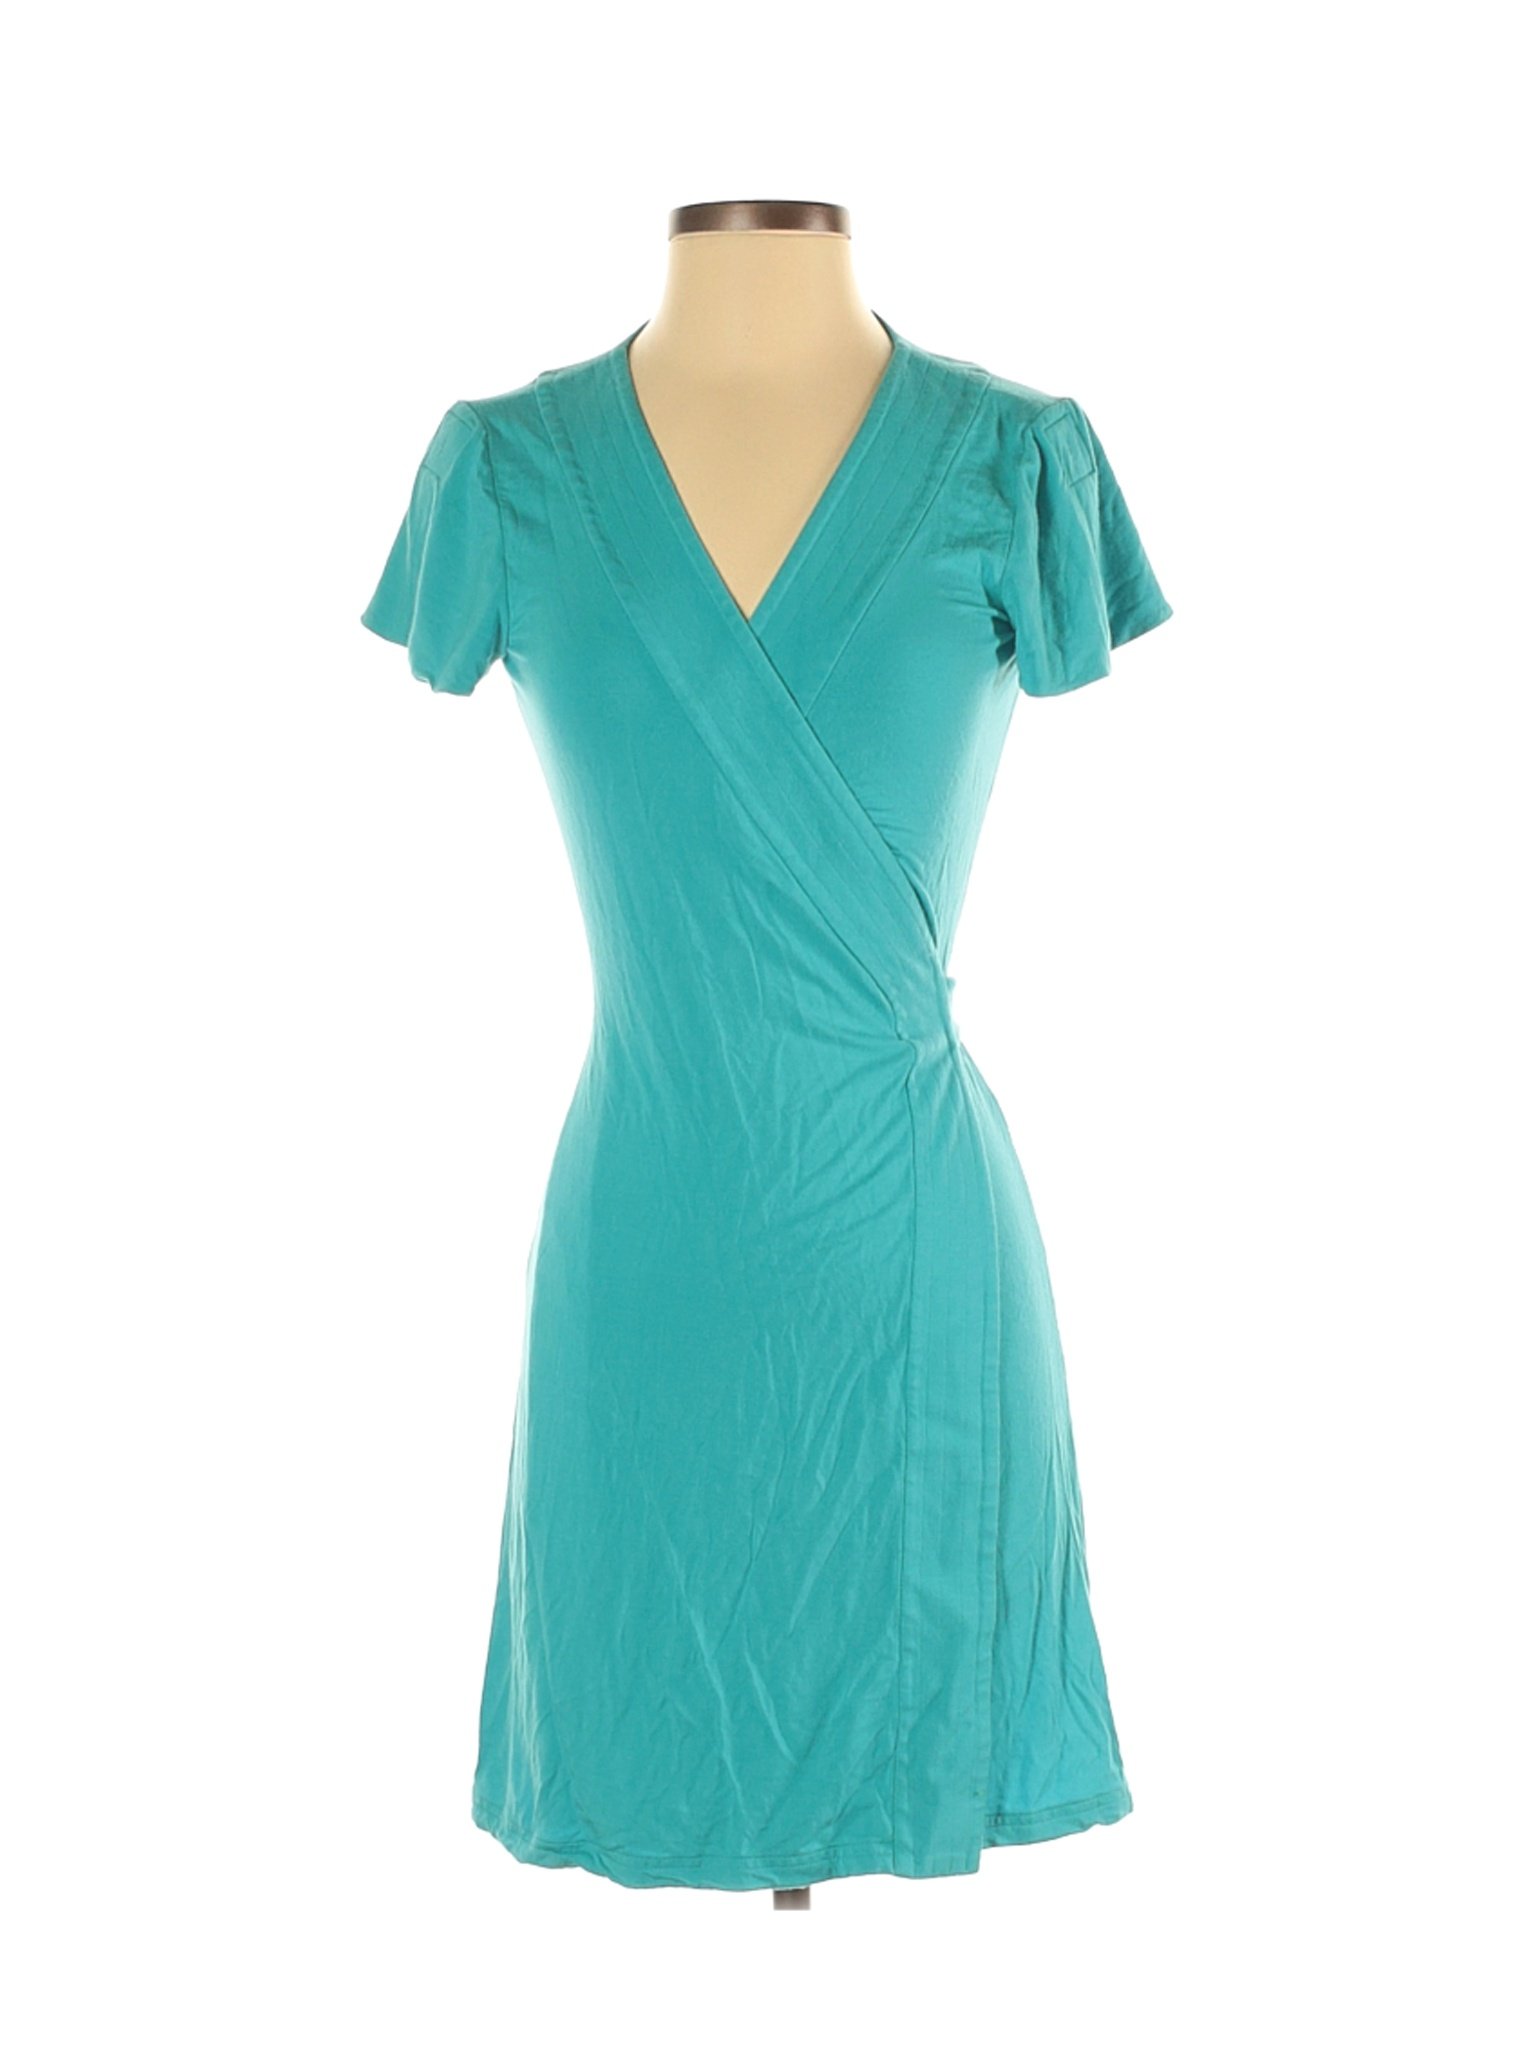 Diane von Furstenberg Stripes Blue Casual Dress Size S - 77% off | thredUP